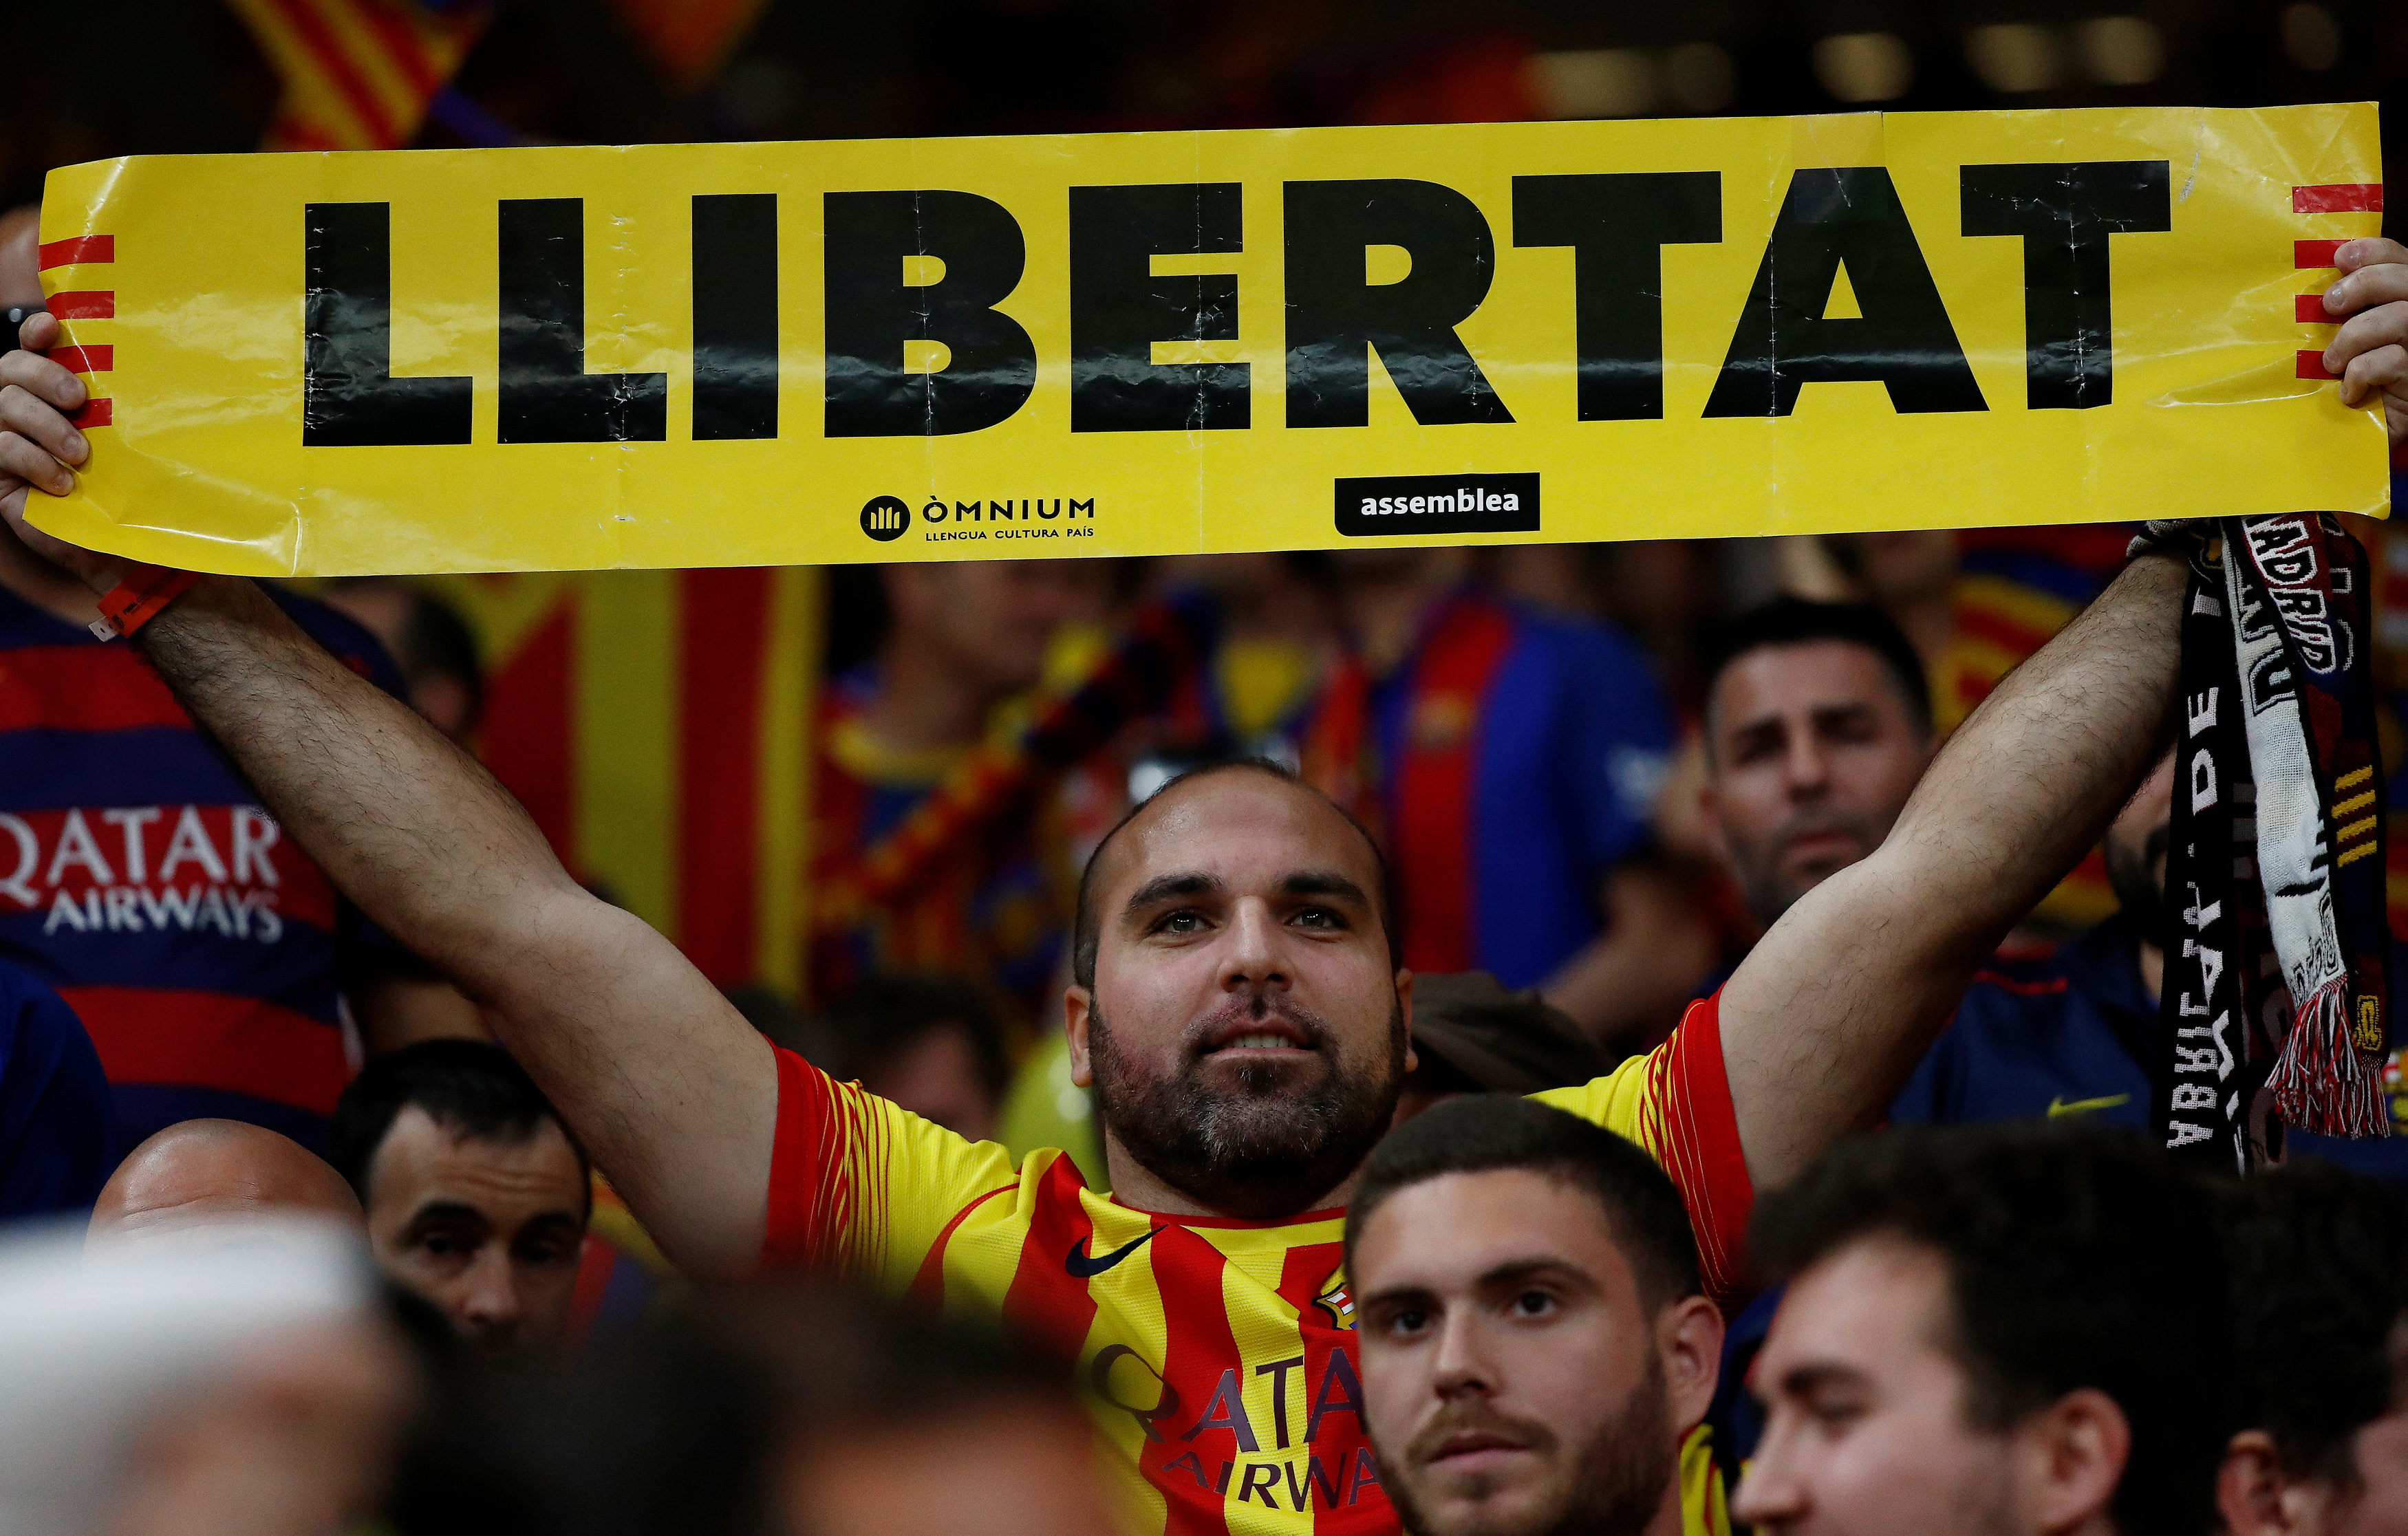 Barcelona fan holds up a “Llibertat” banner before the match (Courtesy of REUTERS/Juan Medina)